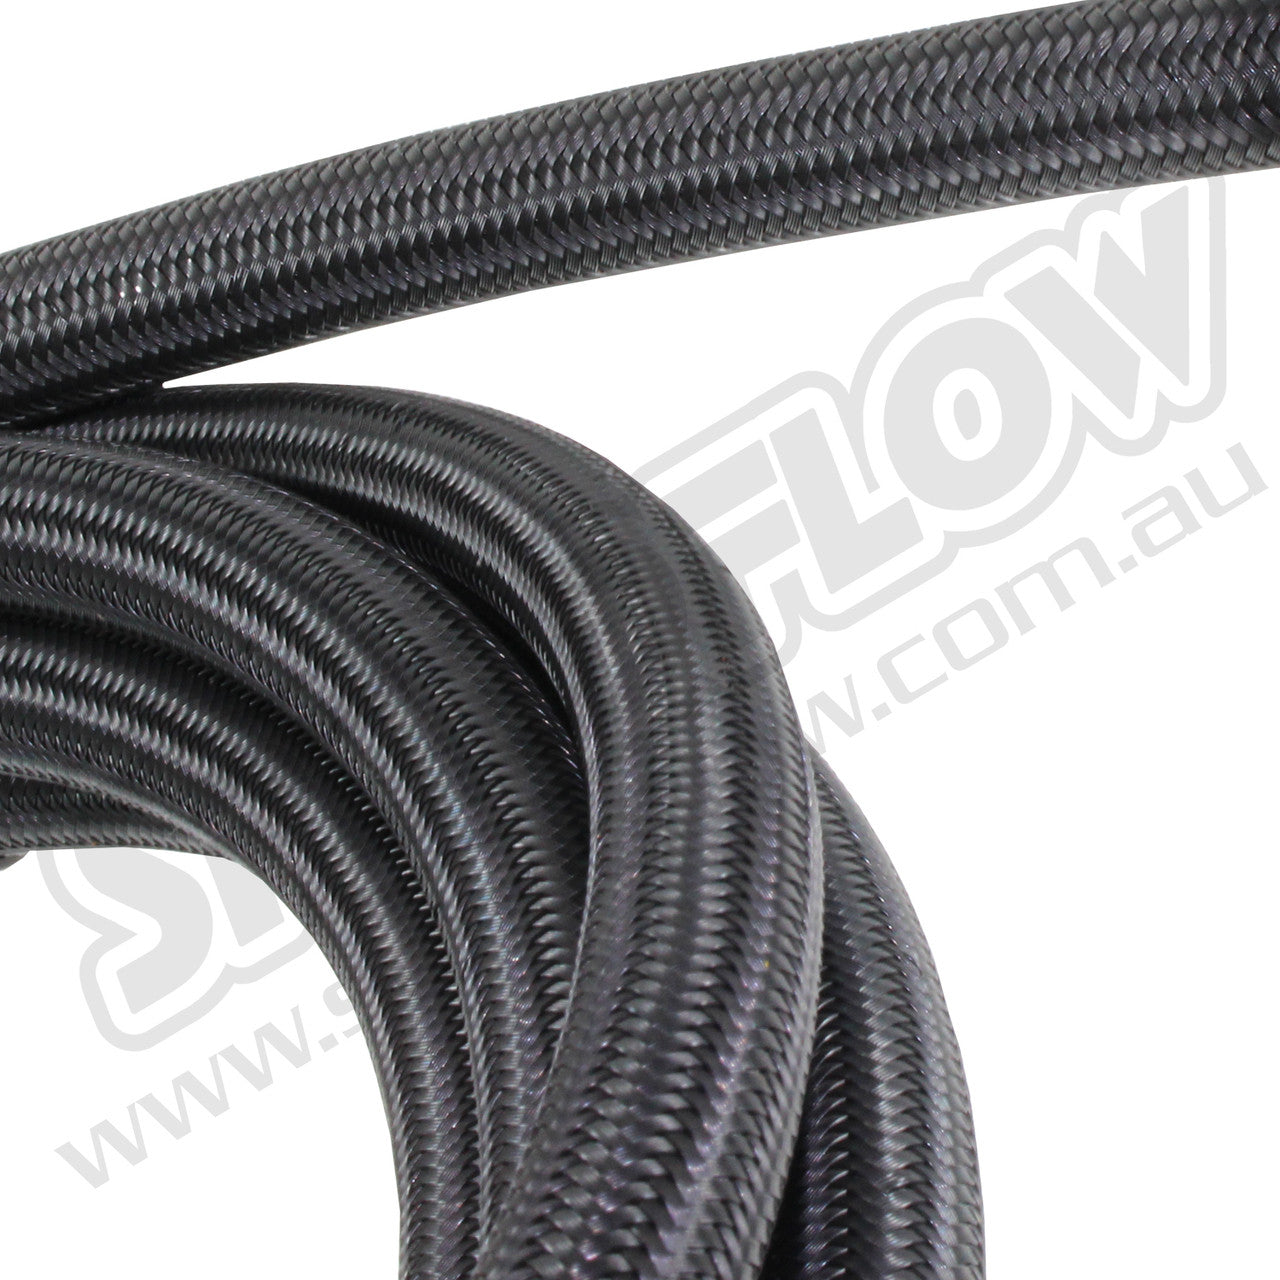 Speedflow 5M -03AN 200 Series Braided Hose - Black Stainless Steel